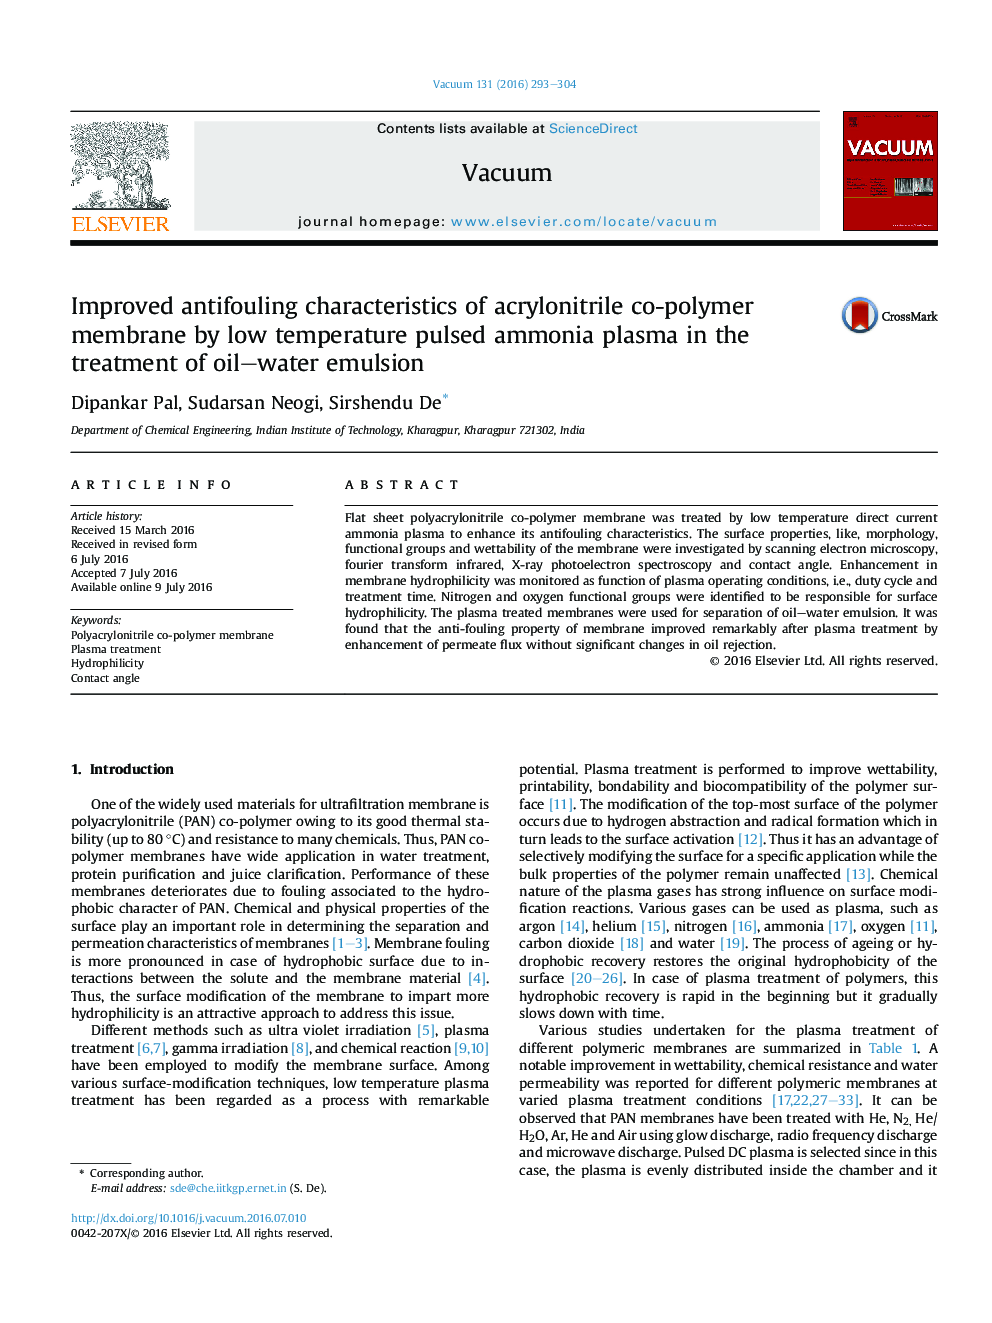 ویژگی های ضد انفجار بهبود یافته غشاء پلی اتیلن اکریلونیتریل با پلاسما آمونیاک پالس پایین در درمان امولسیون آب روغن 